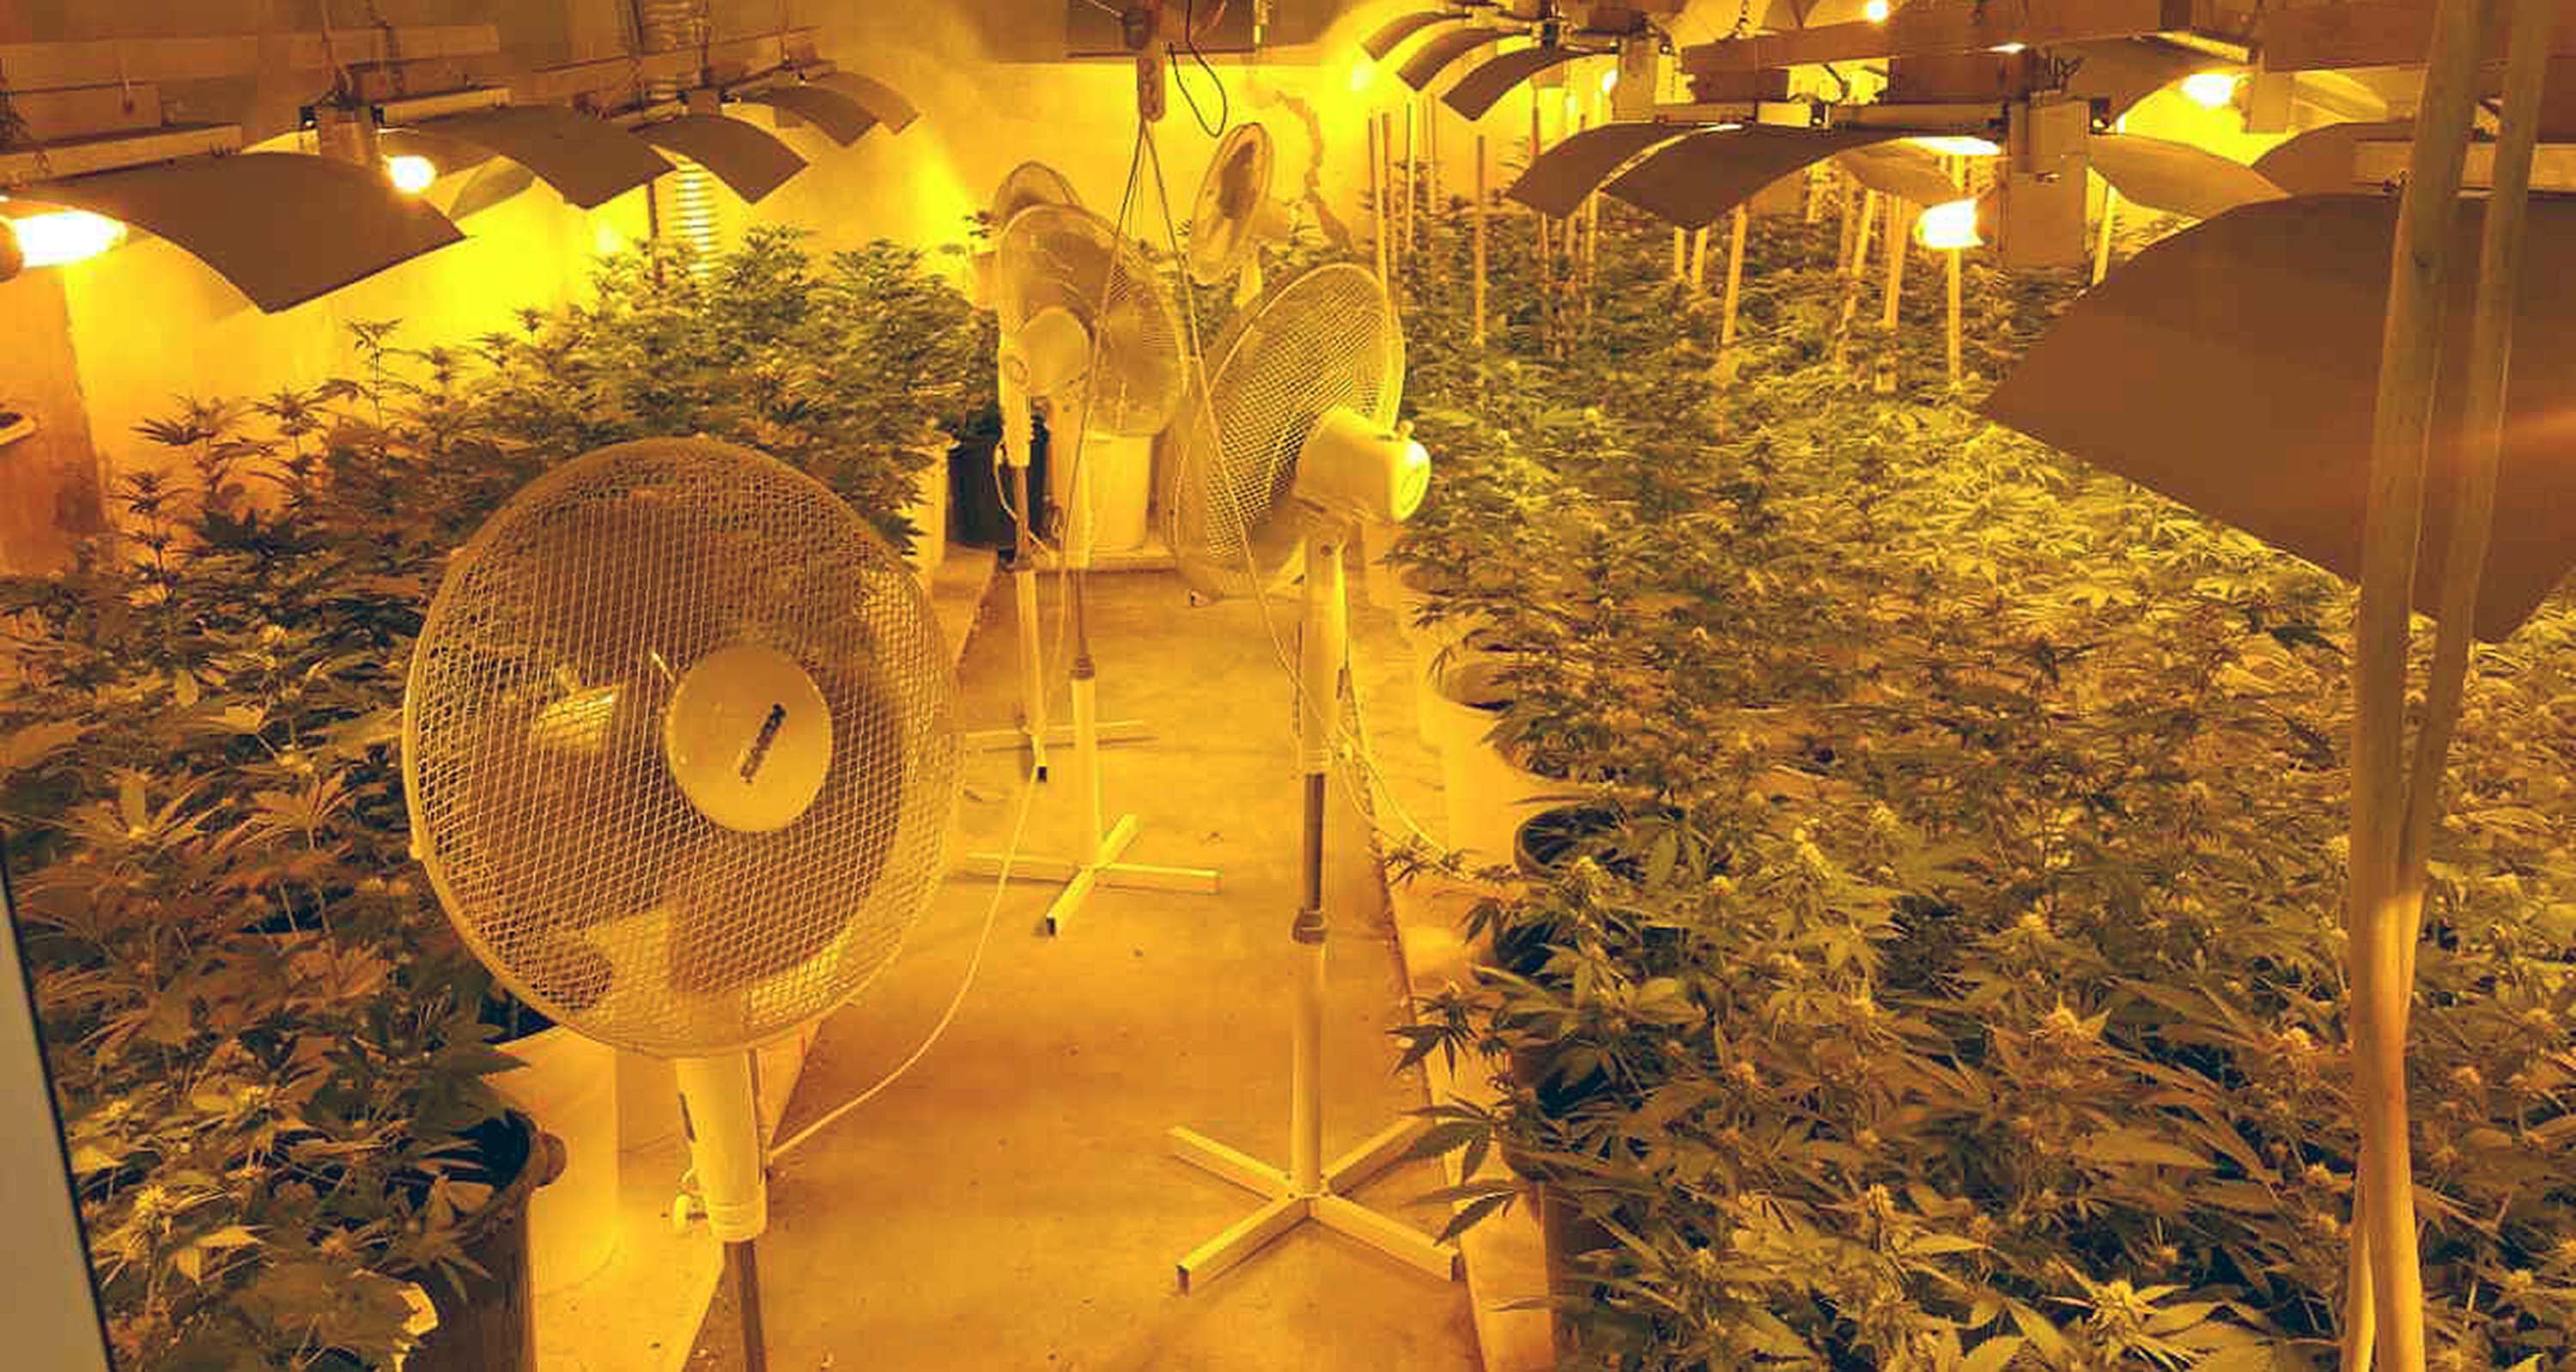 Откривено пет лабораторија за узгој марихуане, заплена више од 1.500 садница и 10 килограма опојне дроге